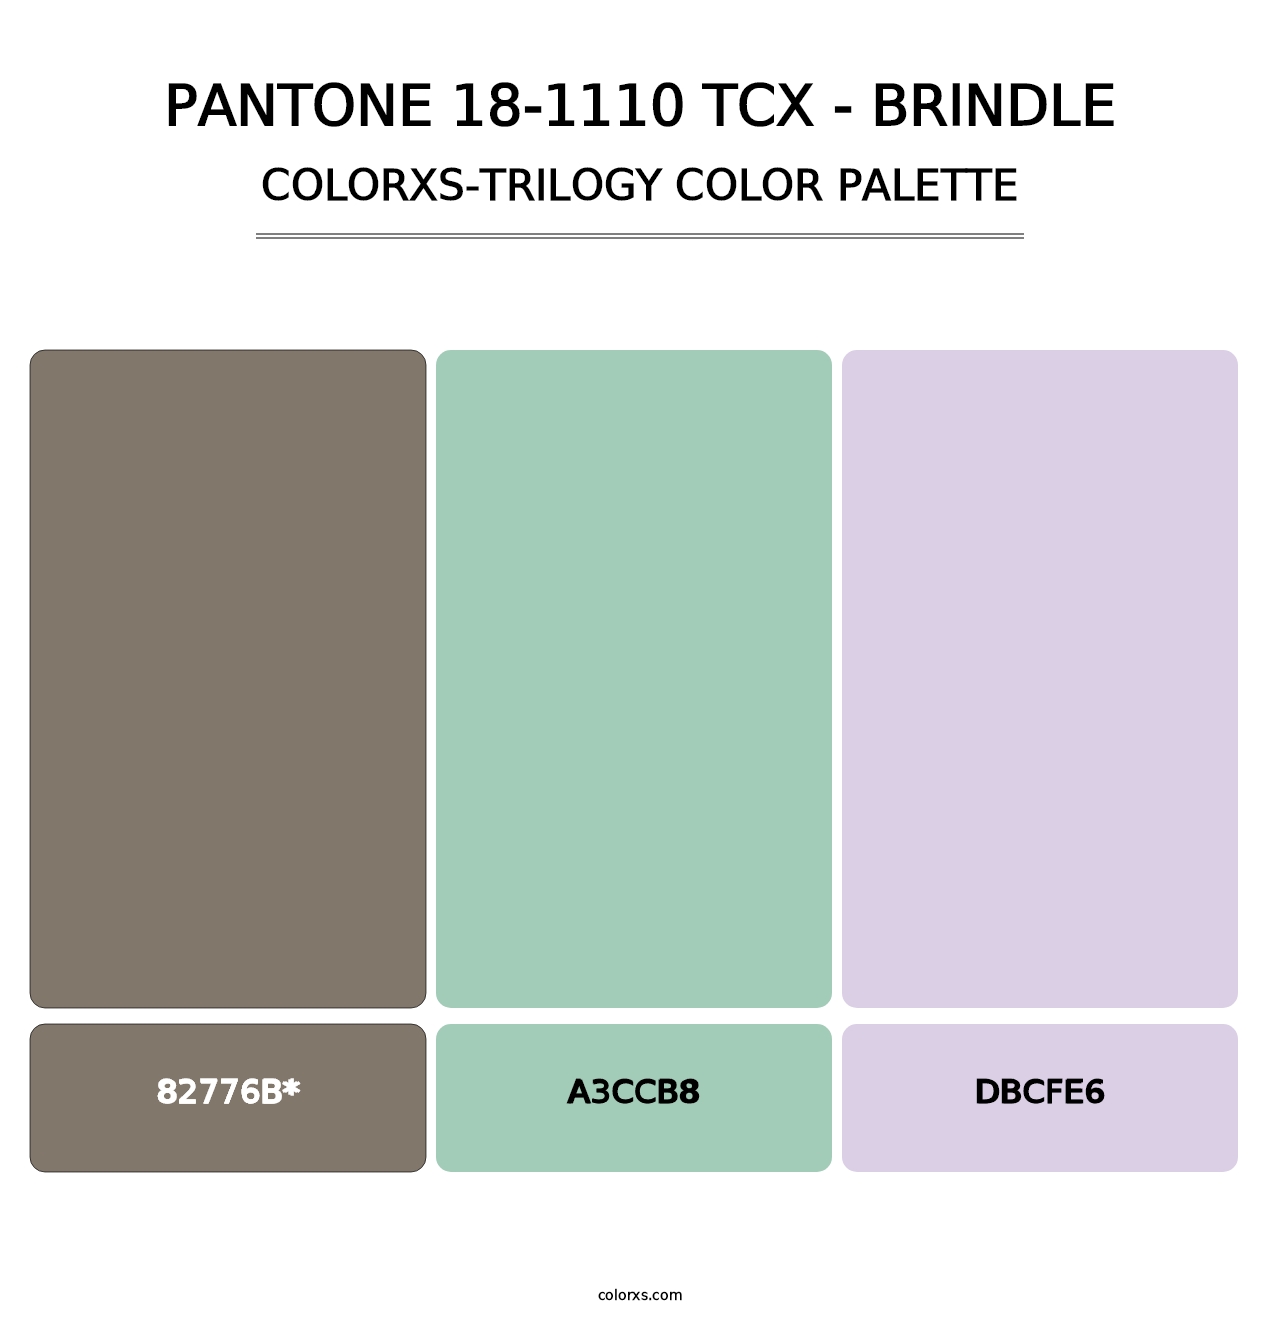 PANTONE 18-1110 TCX - Brindle - Colorxs Trilogy Palette